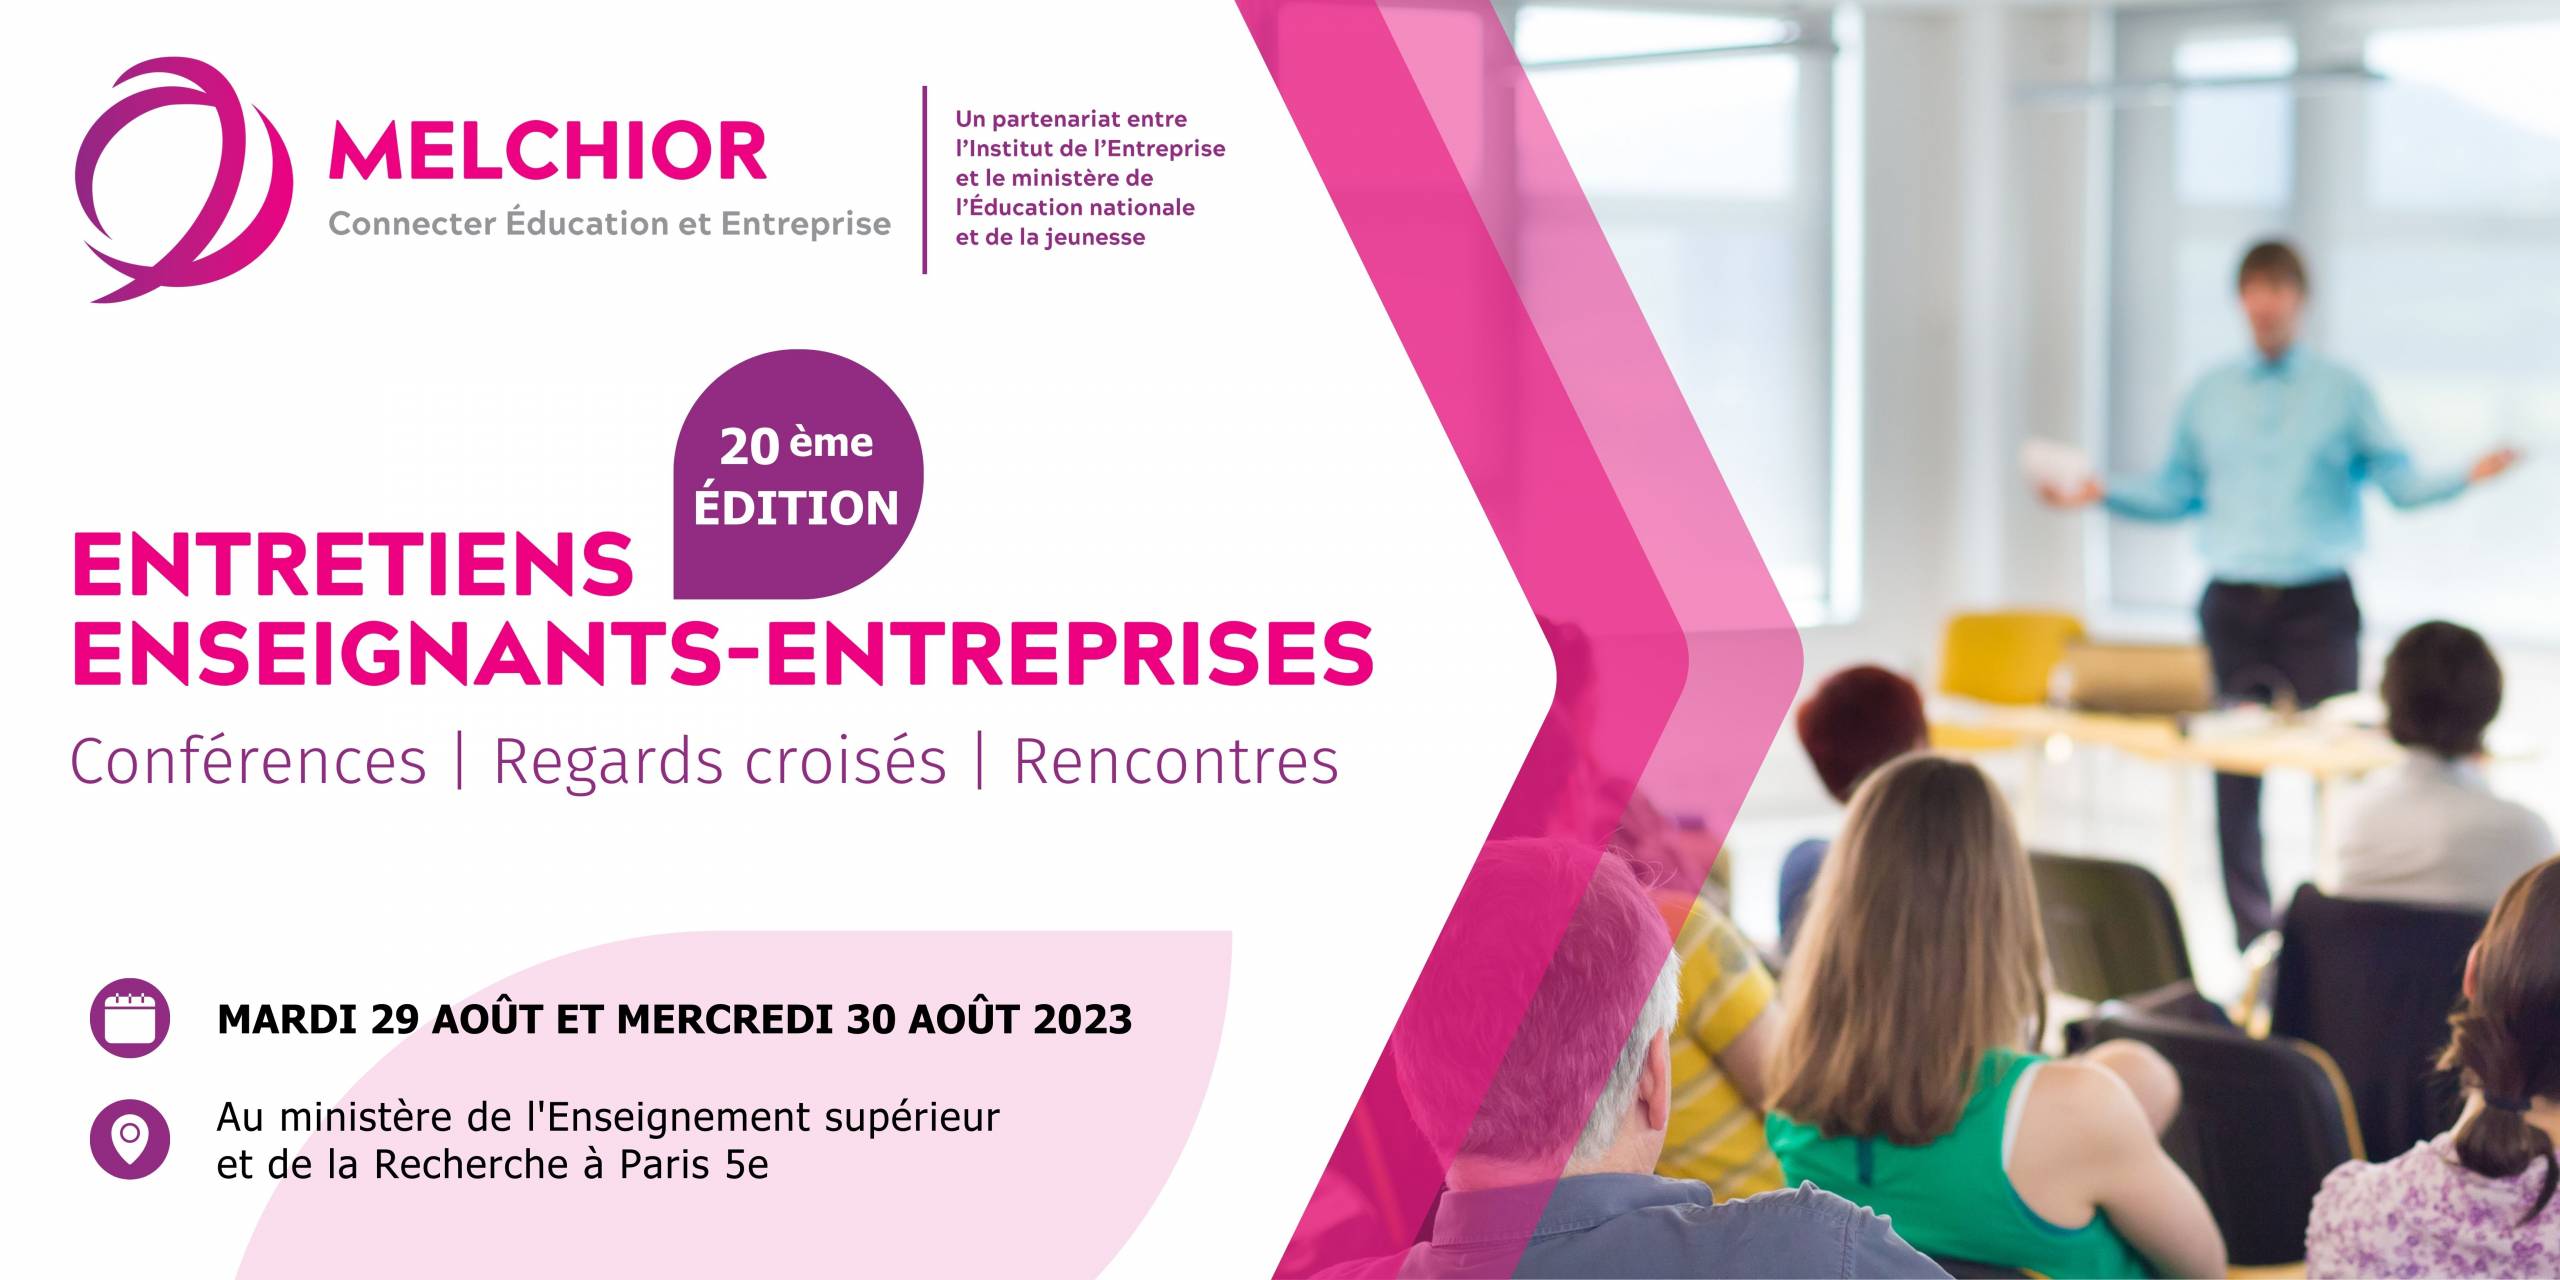 Estelle Sauvat et Pierre Ferracci interviendront aux Entretiens Enseignants-Entreprises, mardi 29 août 2023